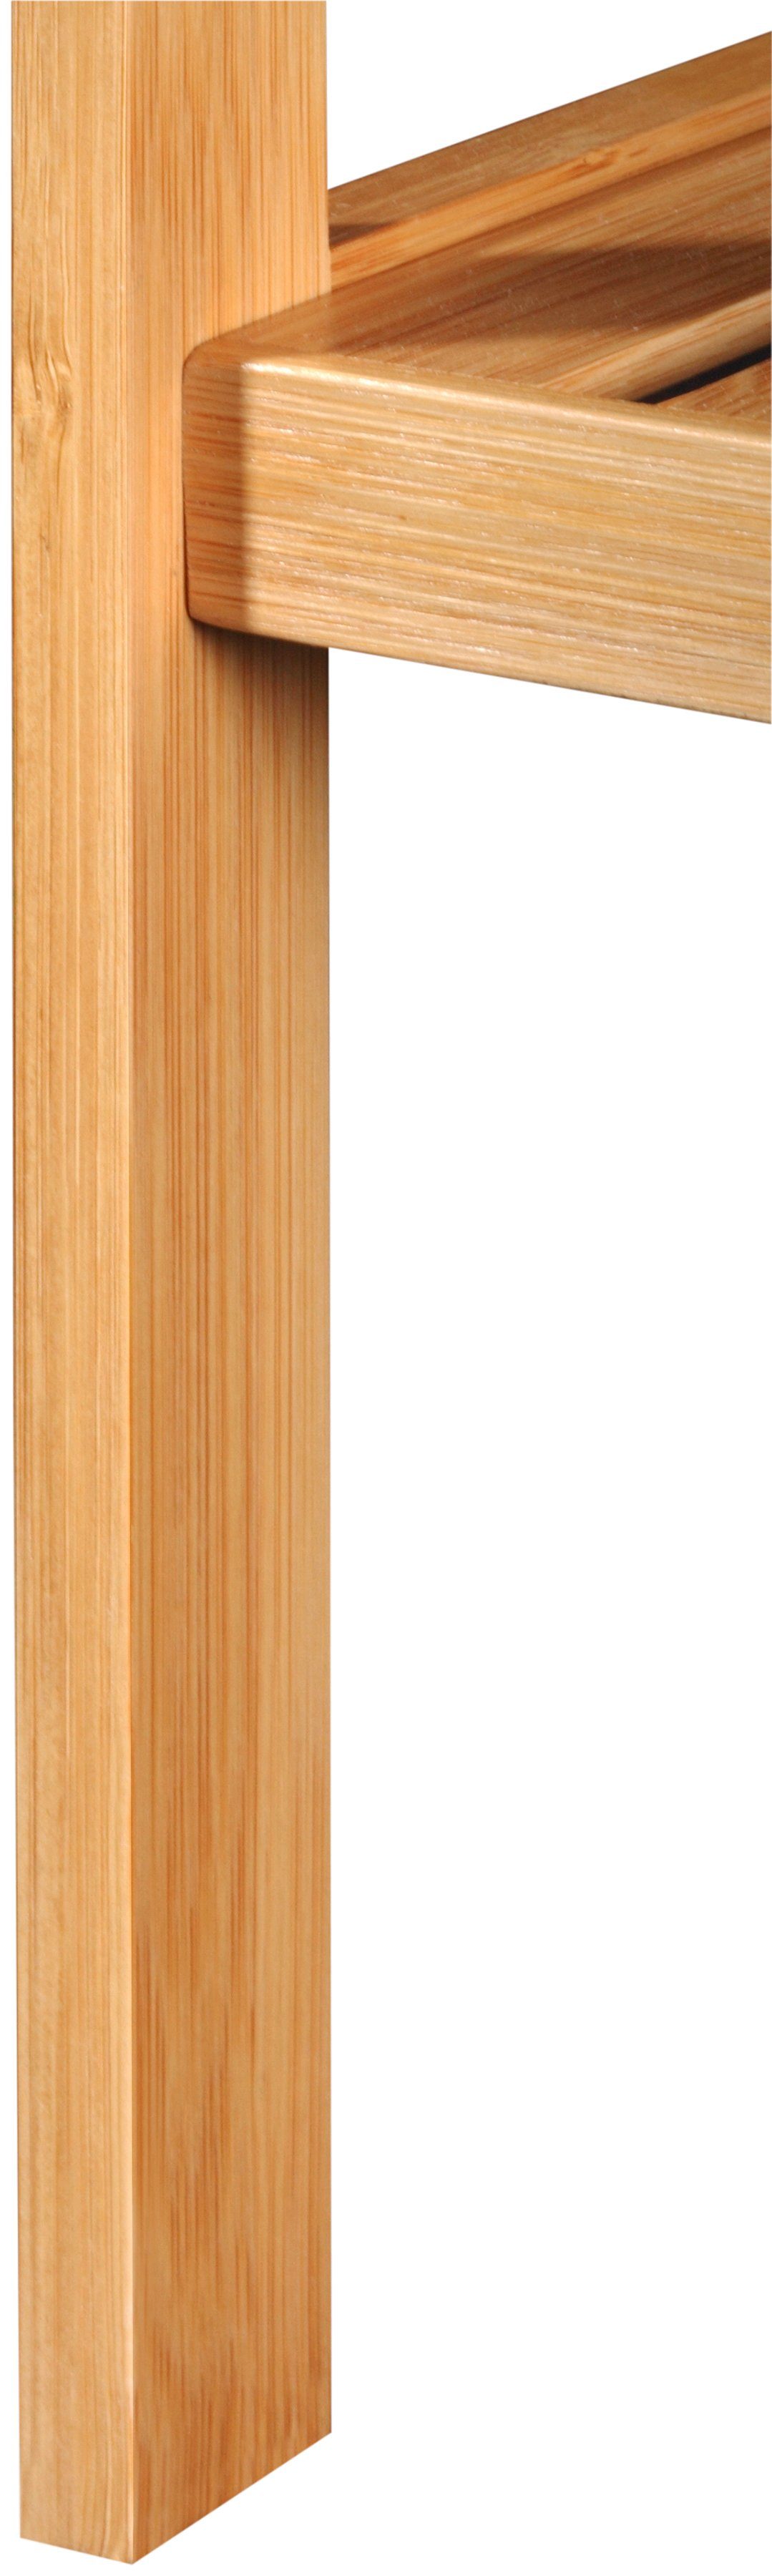 Breite Badregal Bambus, welltime cm, 34 Ablagen 5